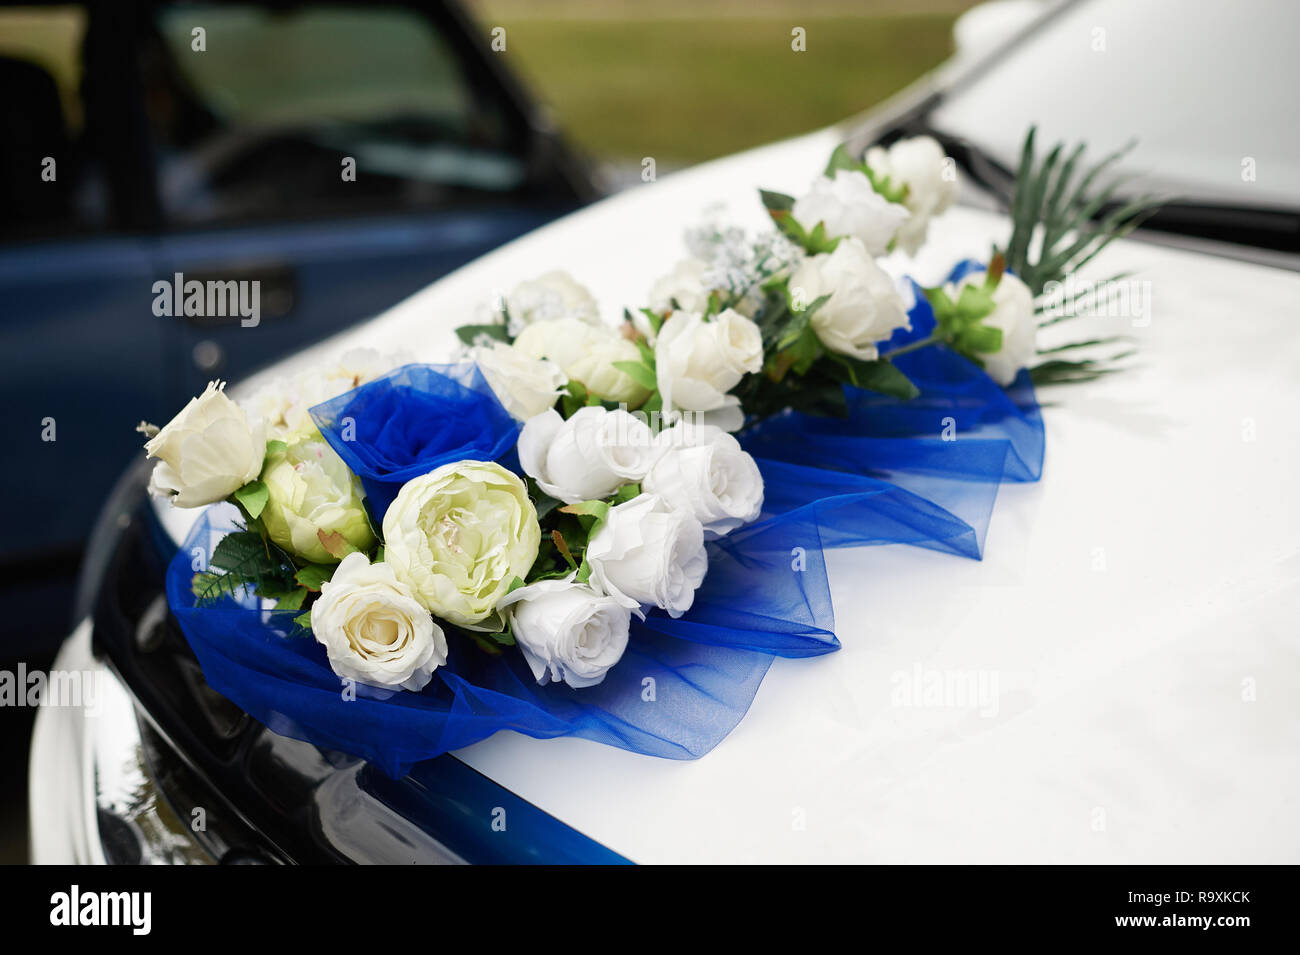 Verziertes Wedding Auto Hochzeitsdekoration Auf Hochzeitsauto  Luxushochzeitsauto Verziert Mit Blumen Stockfoto - Bild von leuchte,  angebracht: 110486508